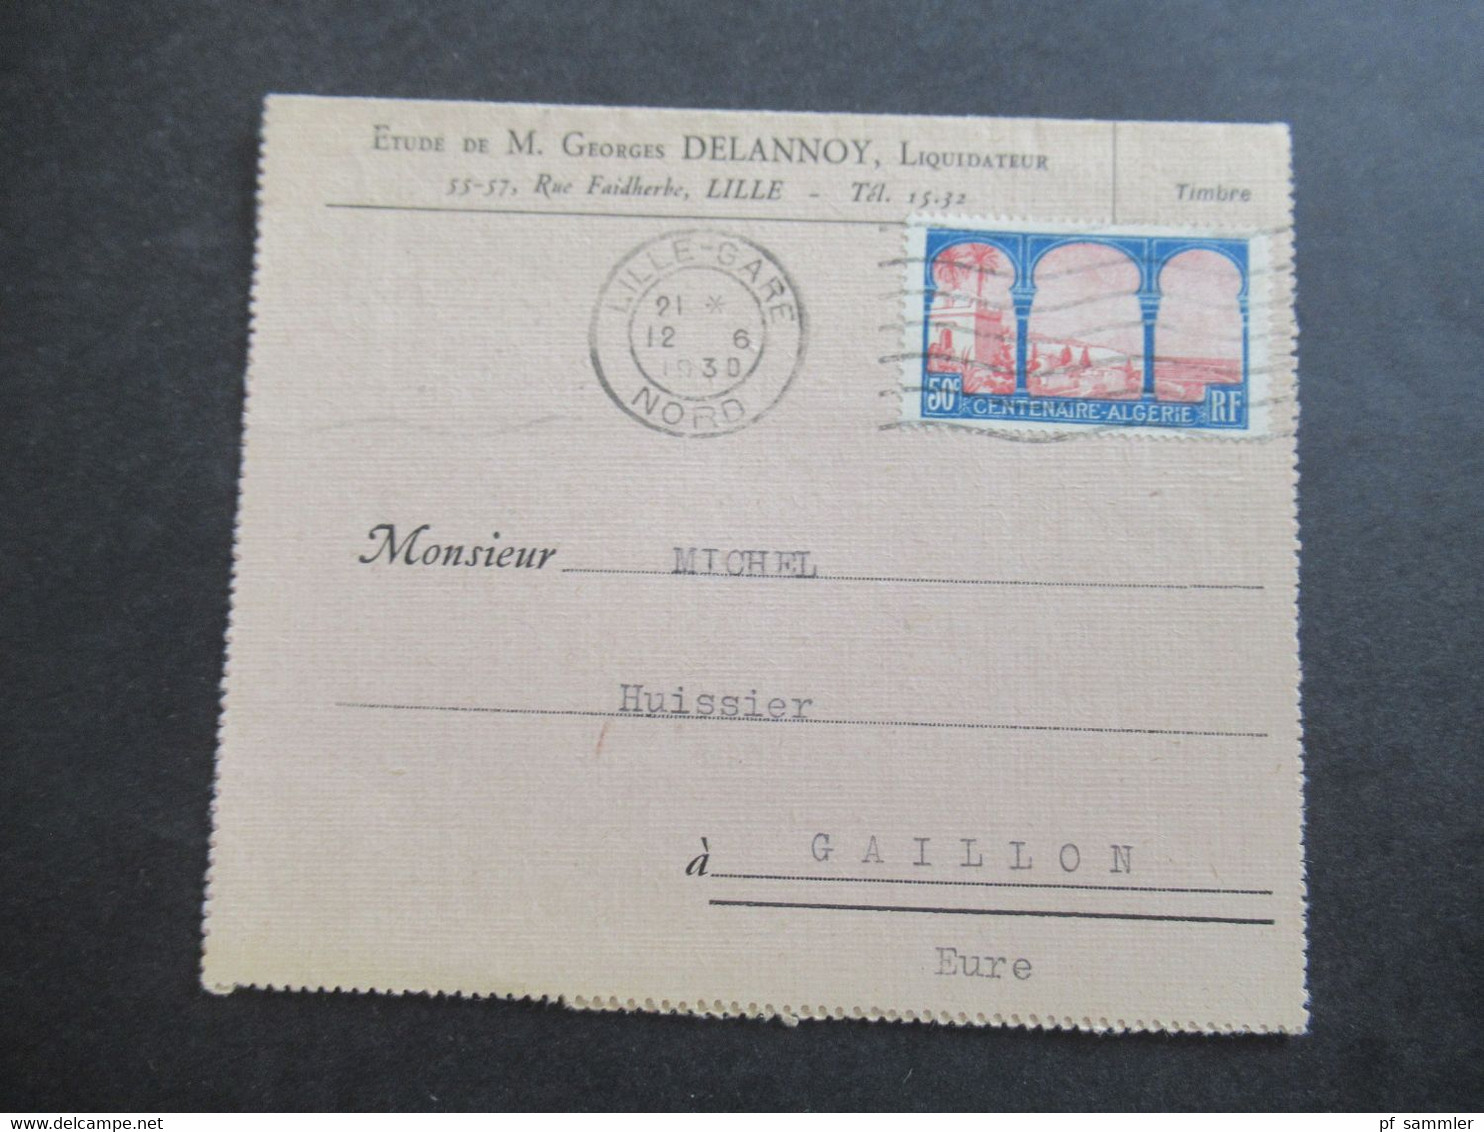 Frankreich 1930 Centeaire Algerie Kartenbrief Etude De M. Geotges Delannoy, Liquidateur Lille Nach Gaillon Gesendet - Storia Postale